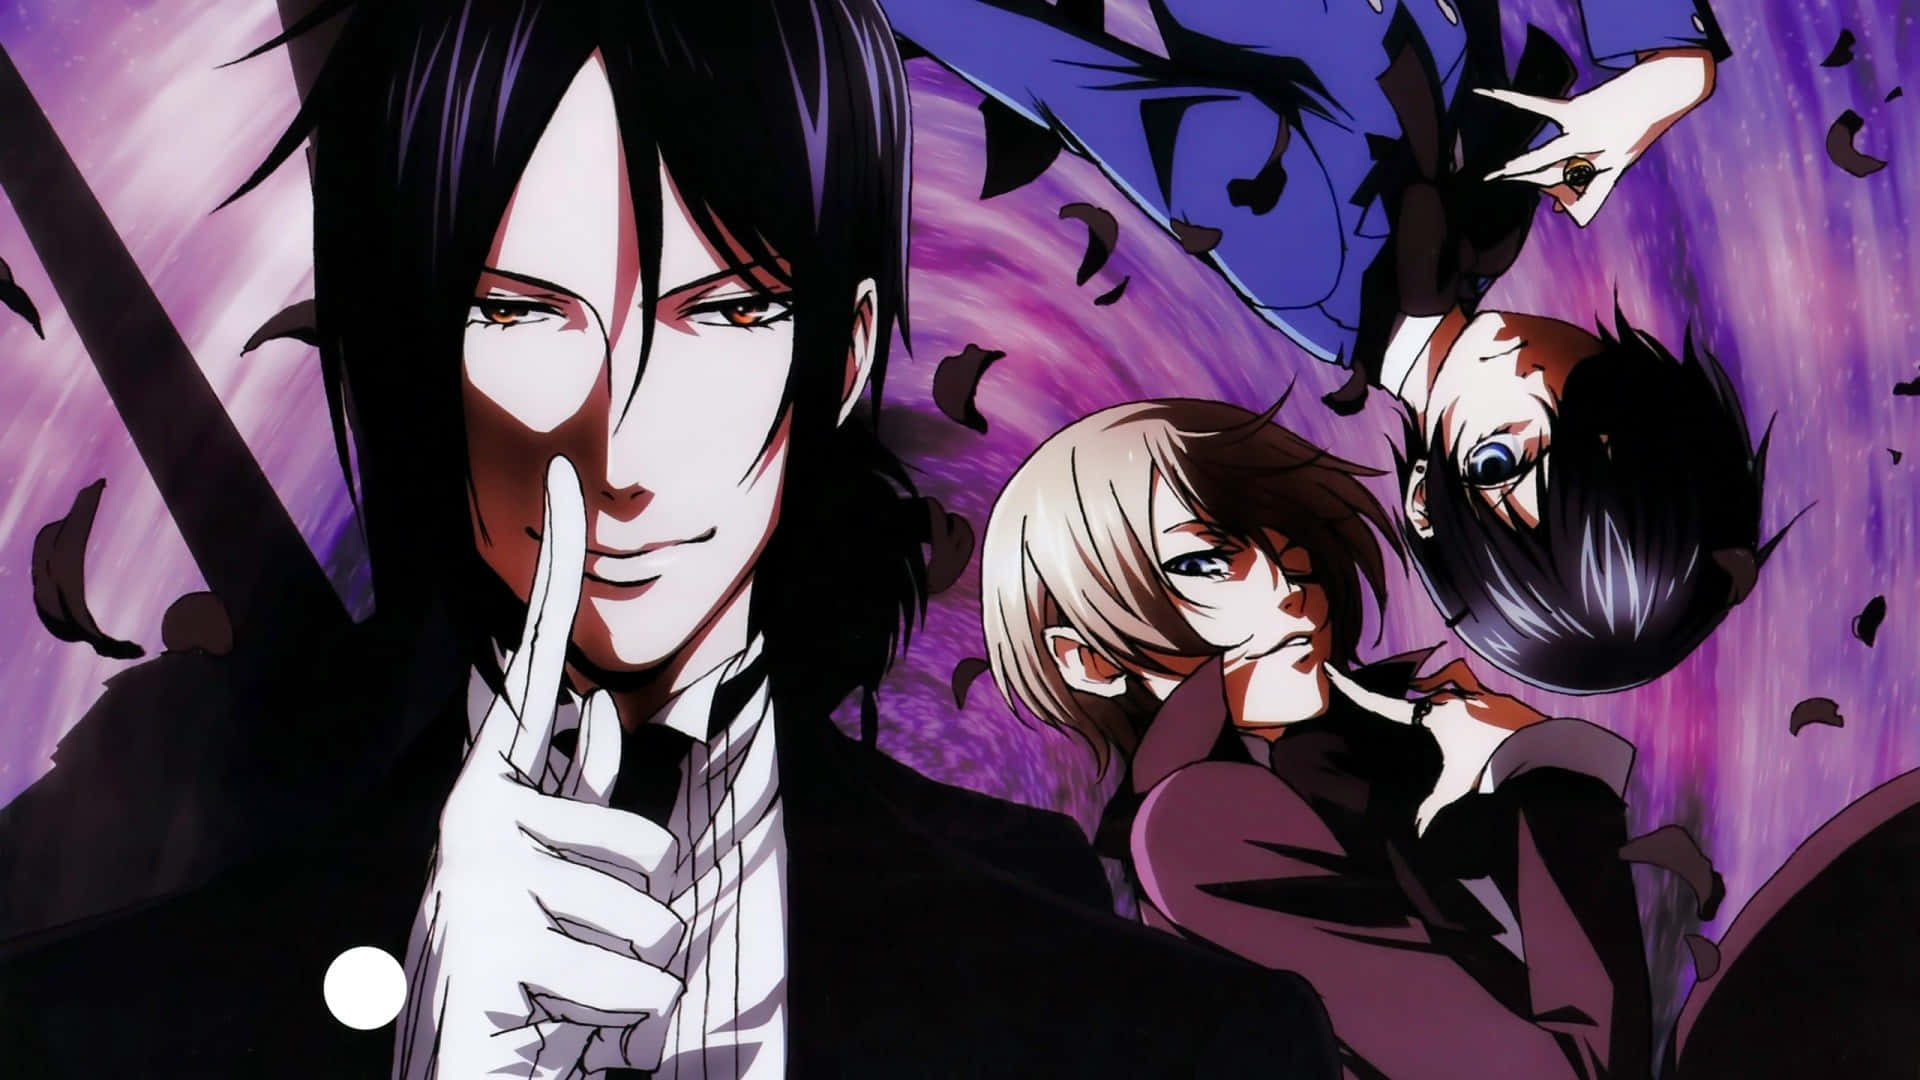 Einegruppe Von Anime-charakteren Mit Langen Haaren Und Schwarzer Kleidung.